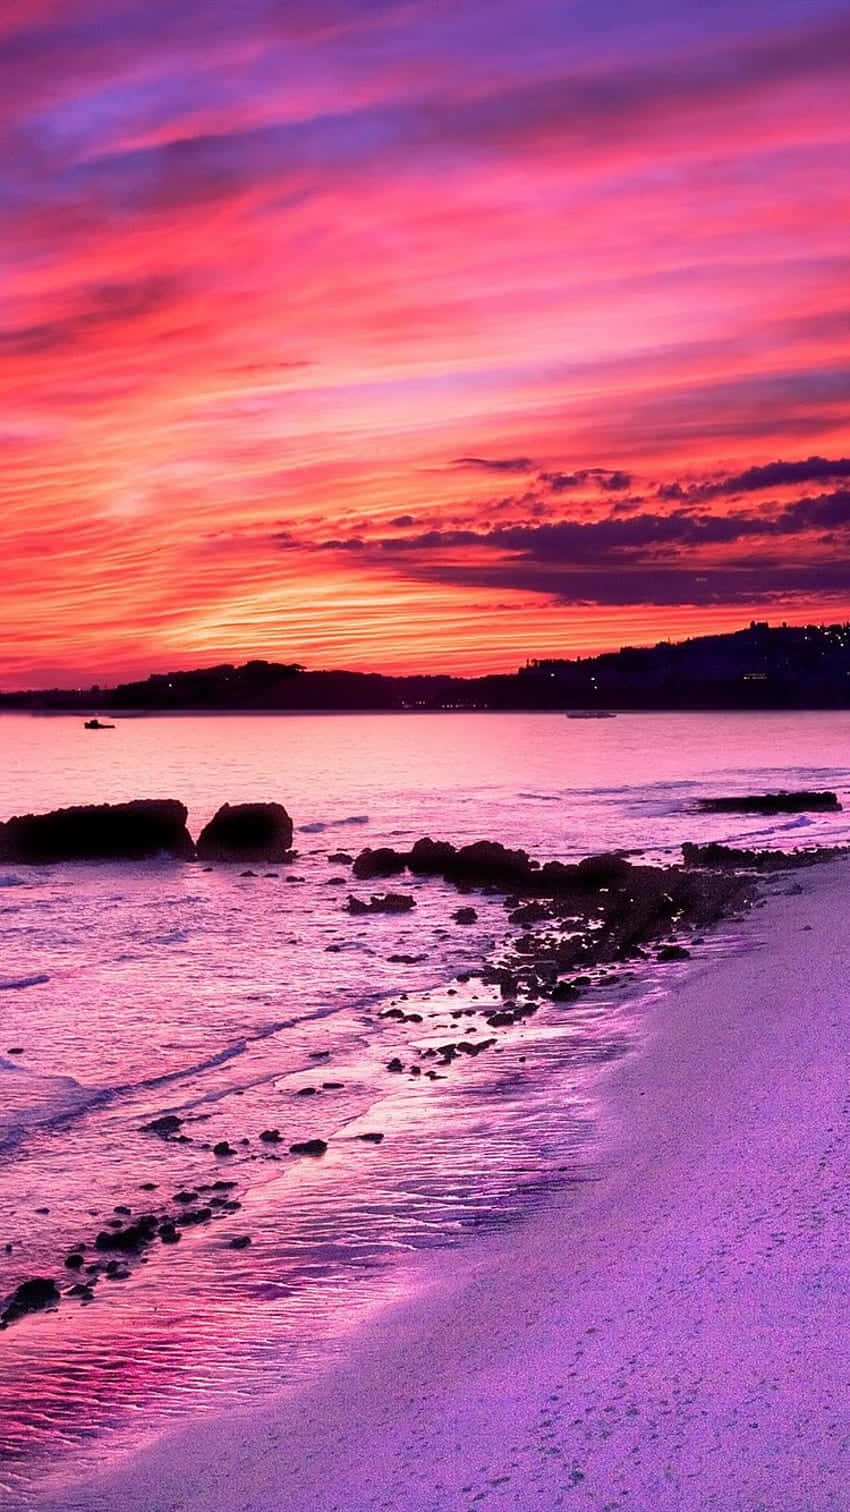 Genießeden Traumhaften Rosa Sonnenuntergang, Während Die Wellen An Deinen Füßen Plätschern. Wallpaper